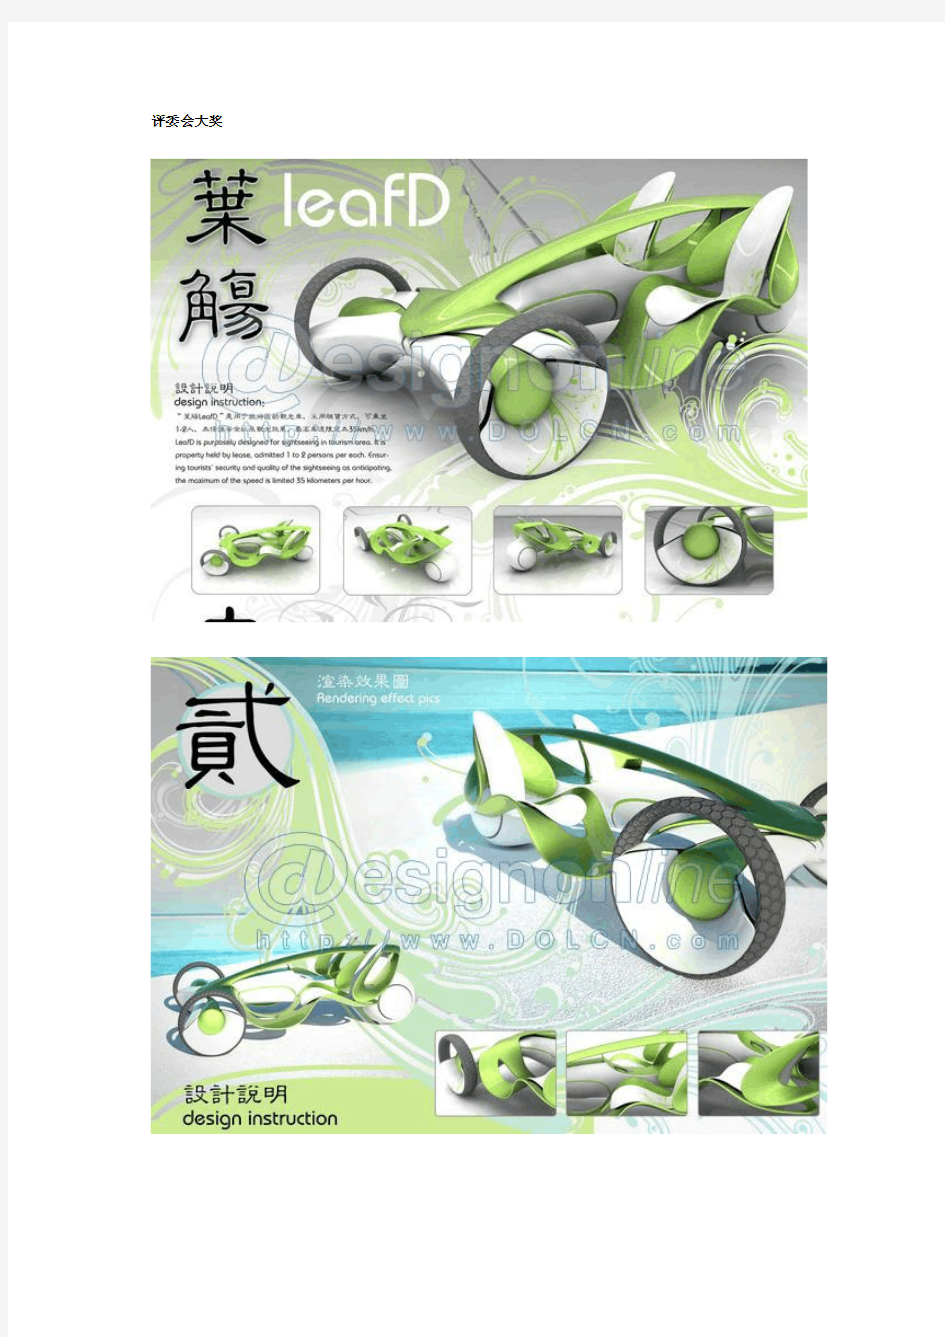 第一汽车奖第二届中国汽车设计大赛获奖作品